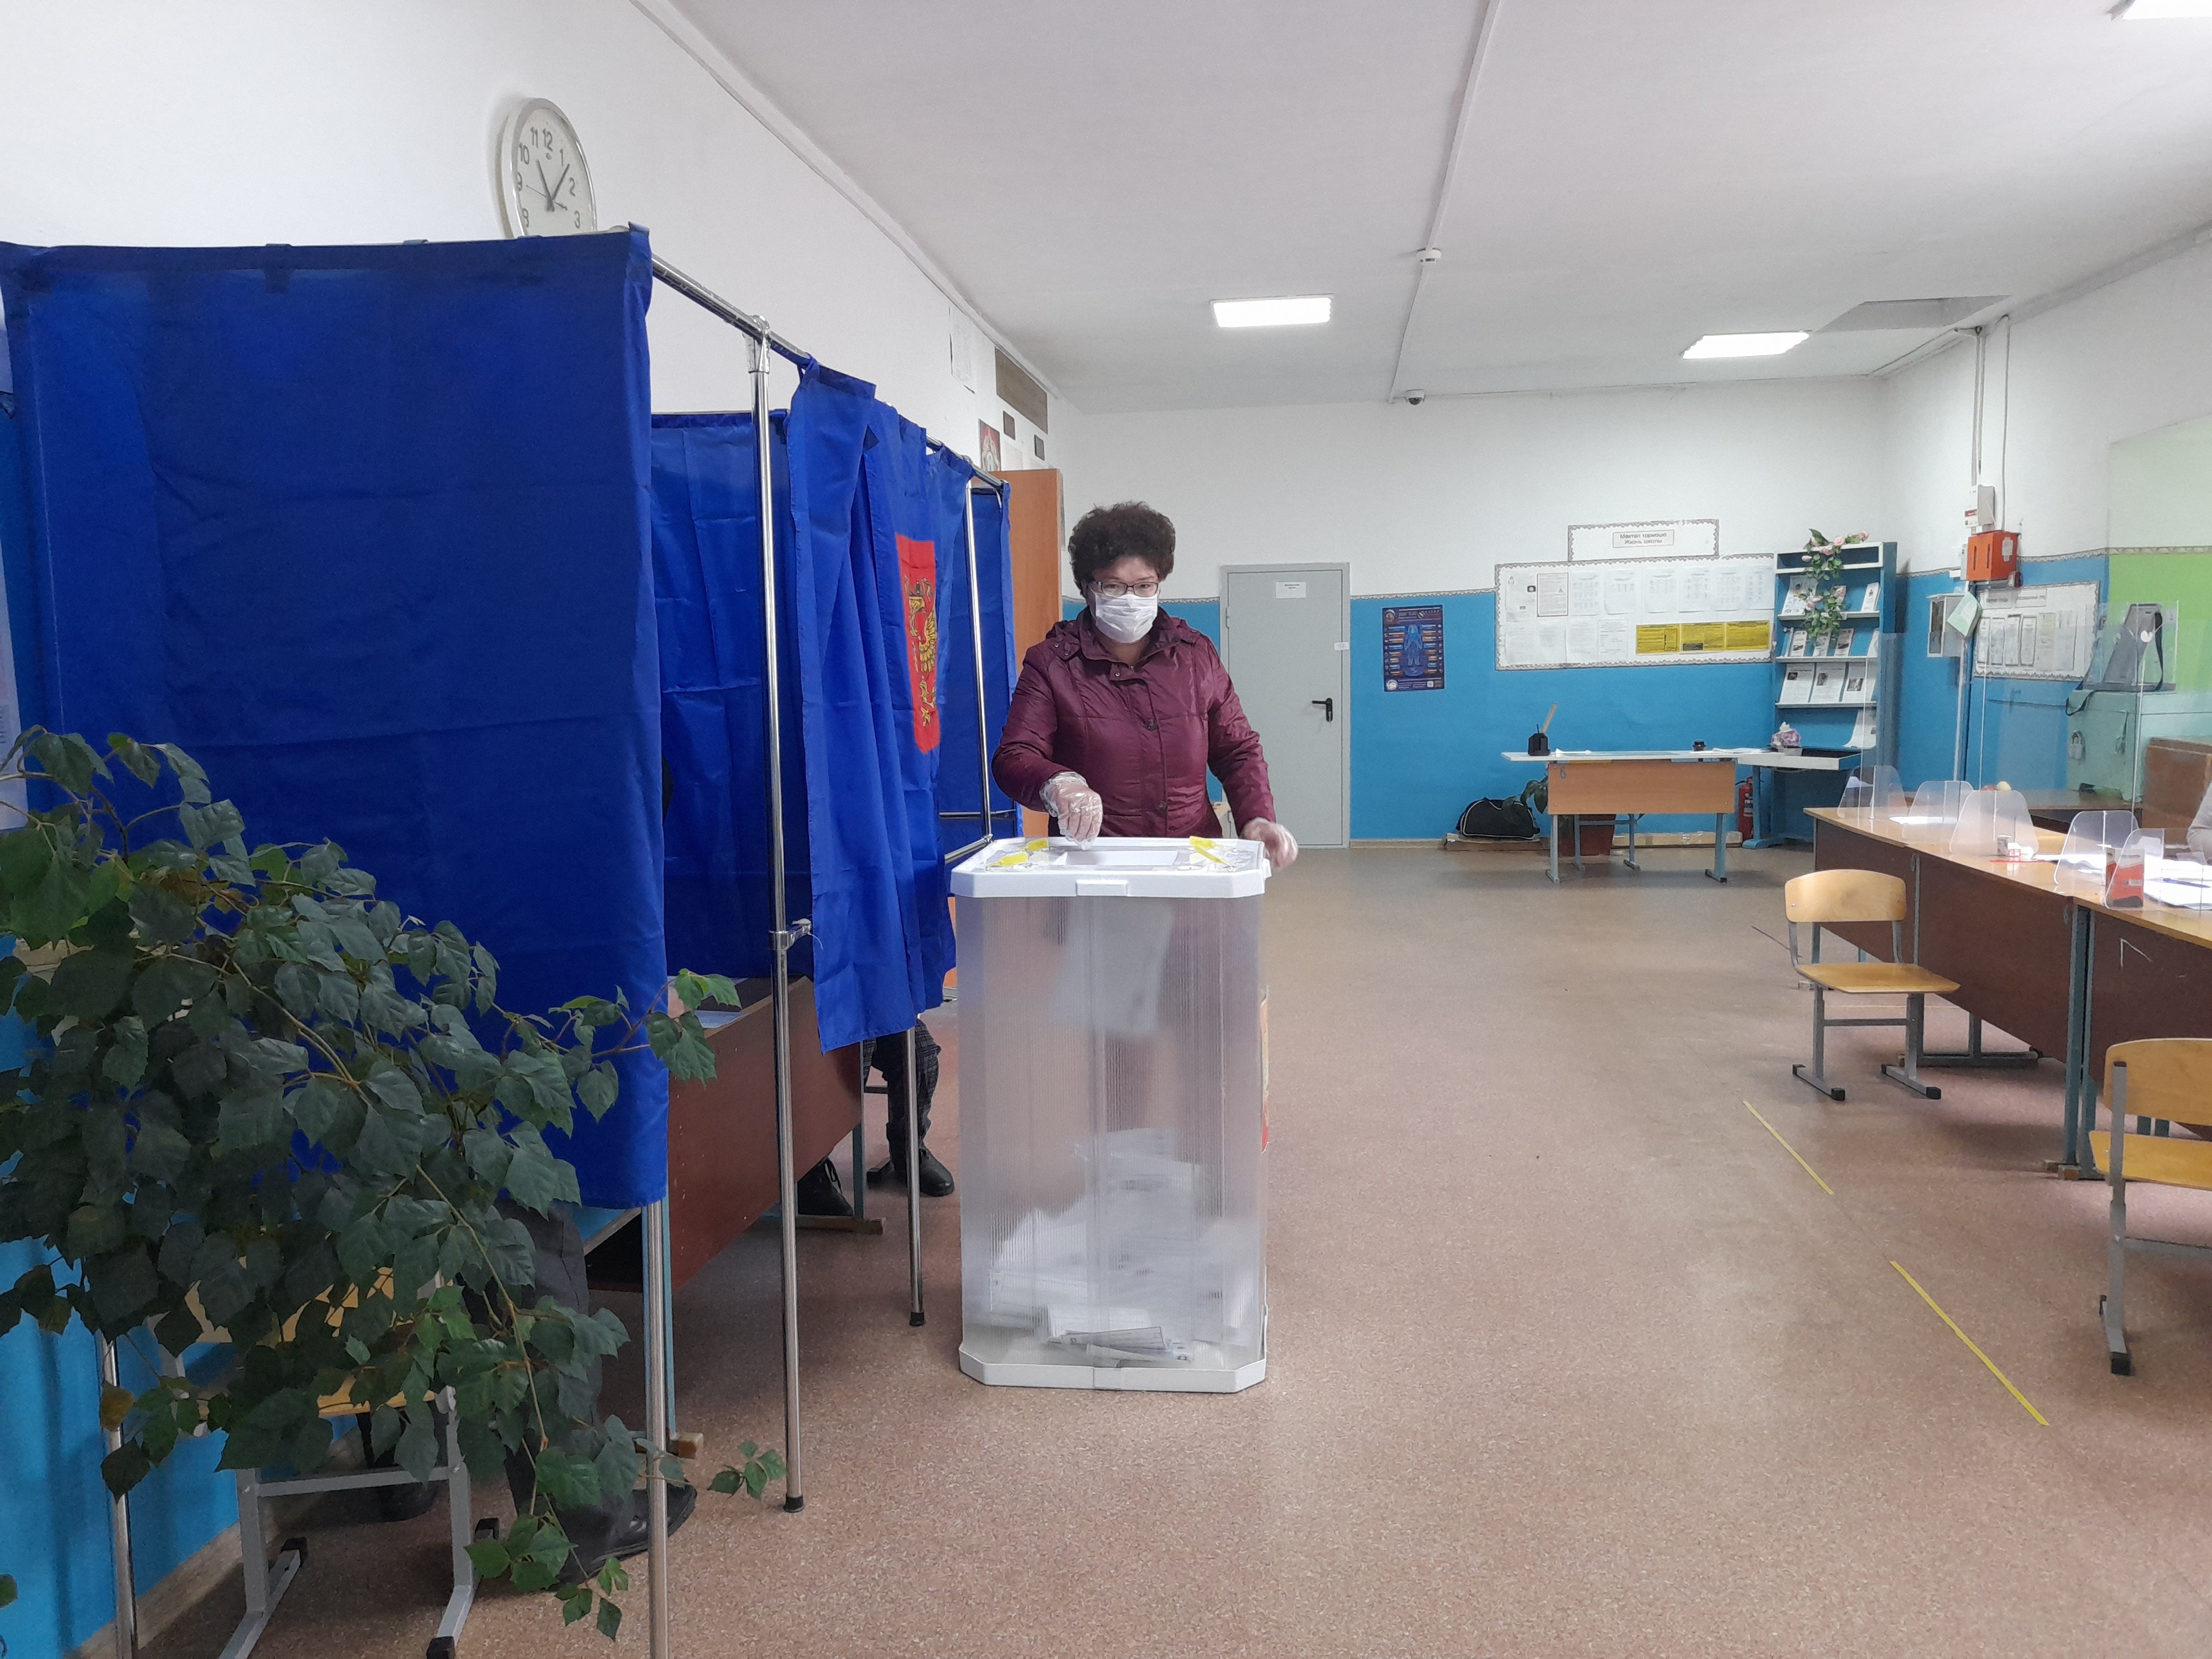 Явка на выборах в башкирии